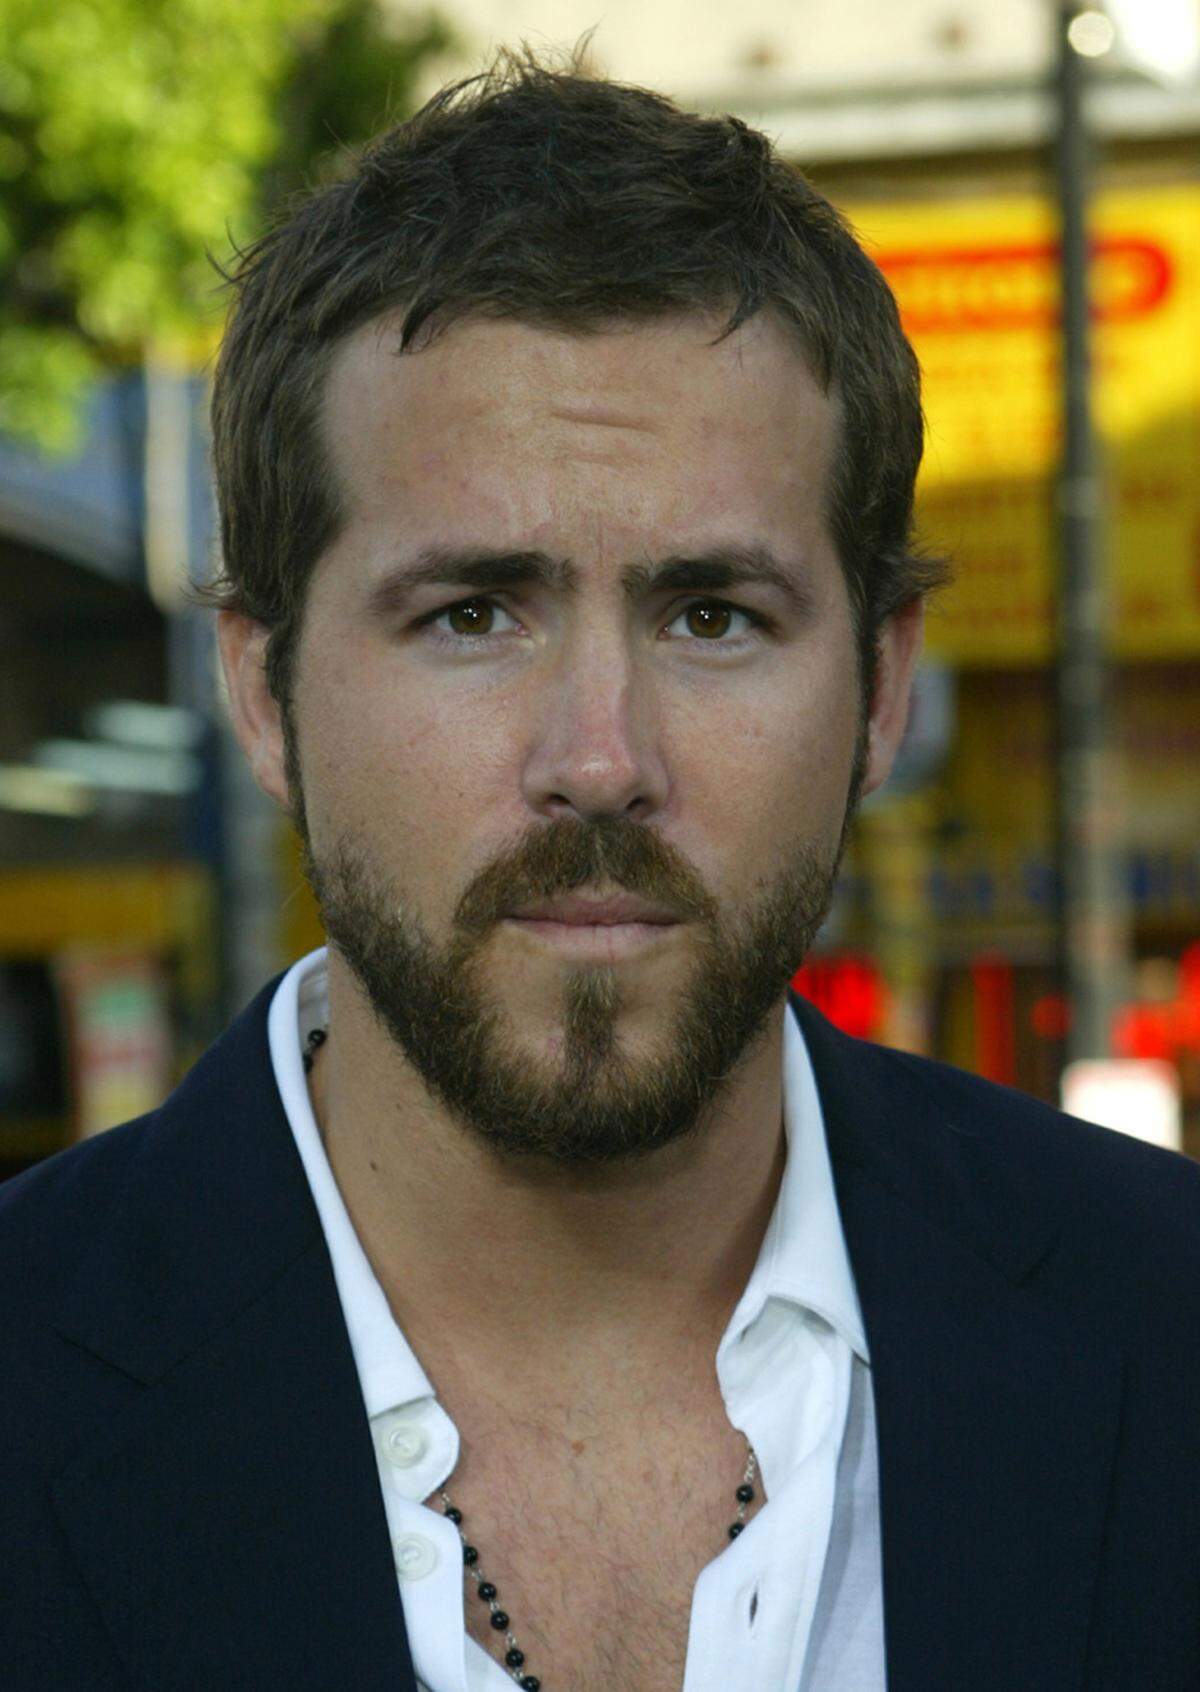 Eine Studie zeigte zudem, dass Männer eine Vorliebe für Frauen mit Gesichtszügen haben, die ihnen eher unbekannt sind und damit exotisch auf sie wirken.Schauspieler Ryan Reynolds.